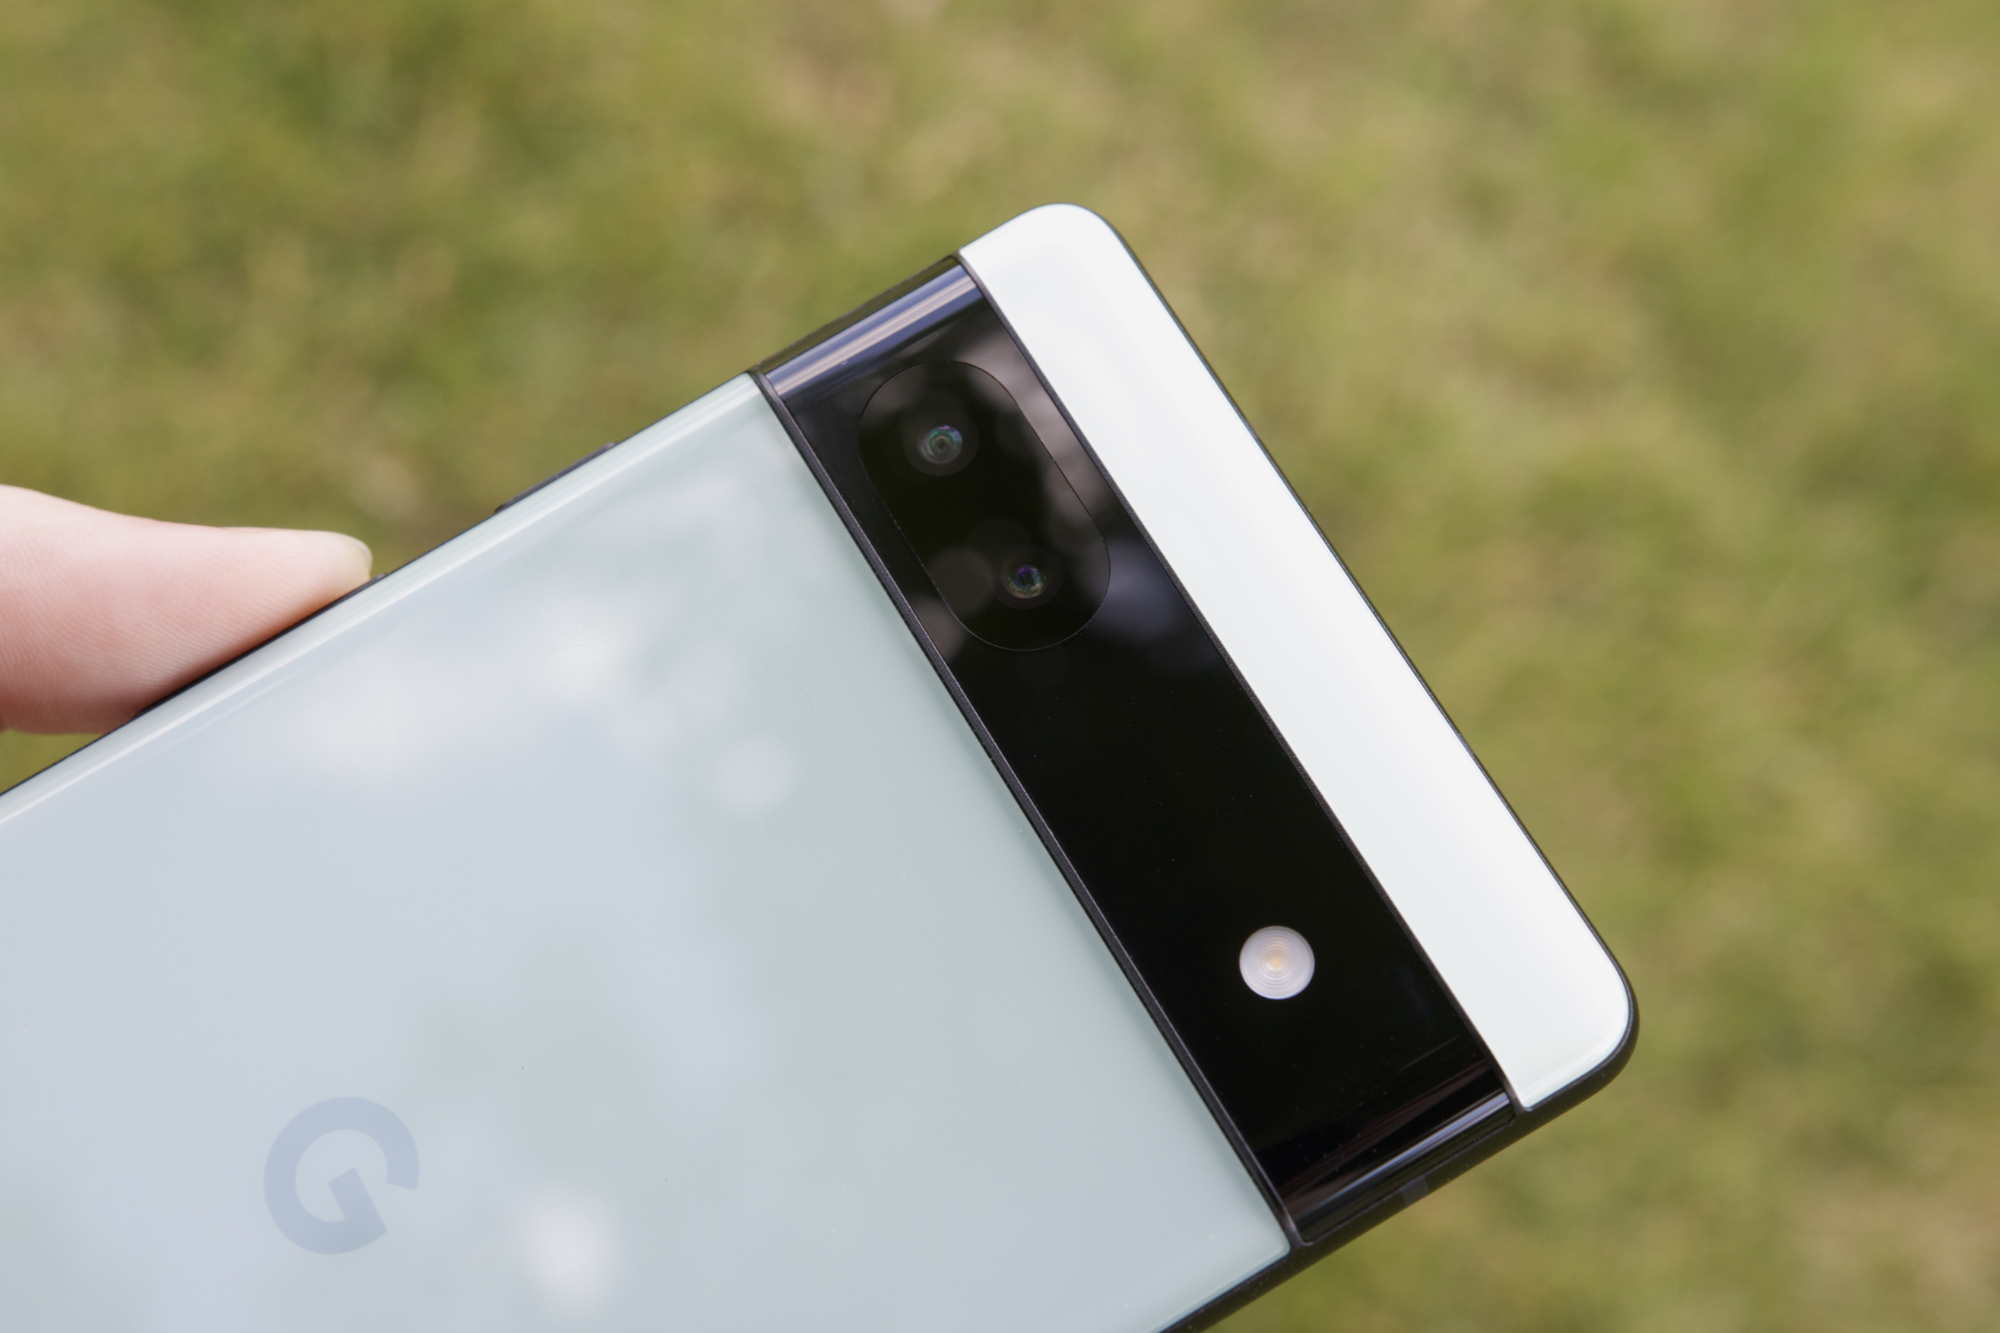 Bagian belakang Google Pixel 6a. Ini adalah bidikan close-up yang berfokus pada bilah kamera belakang ponsel.